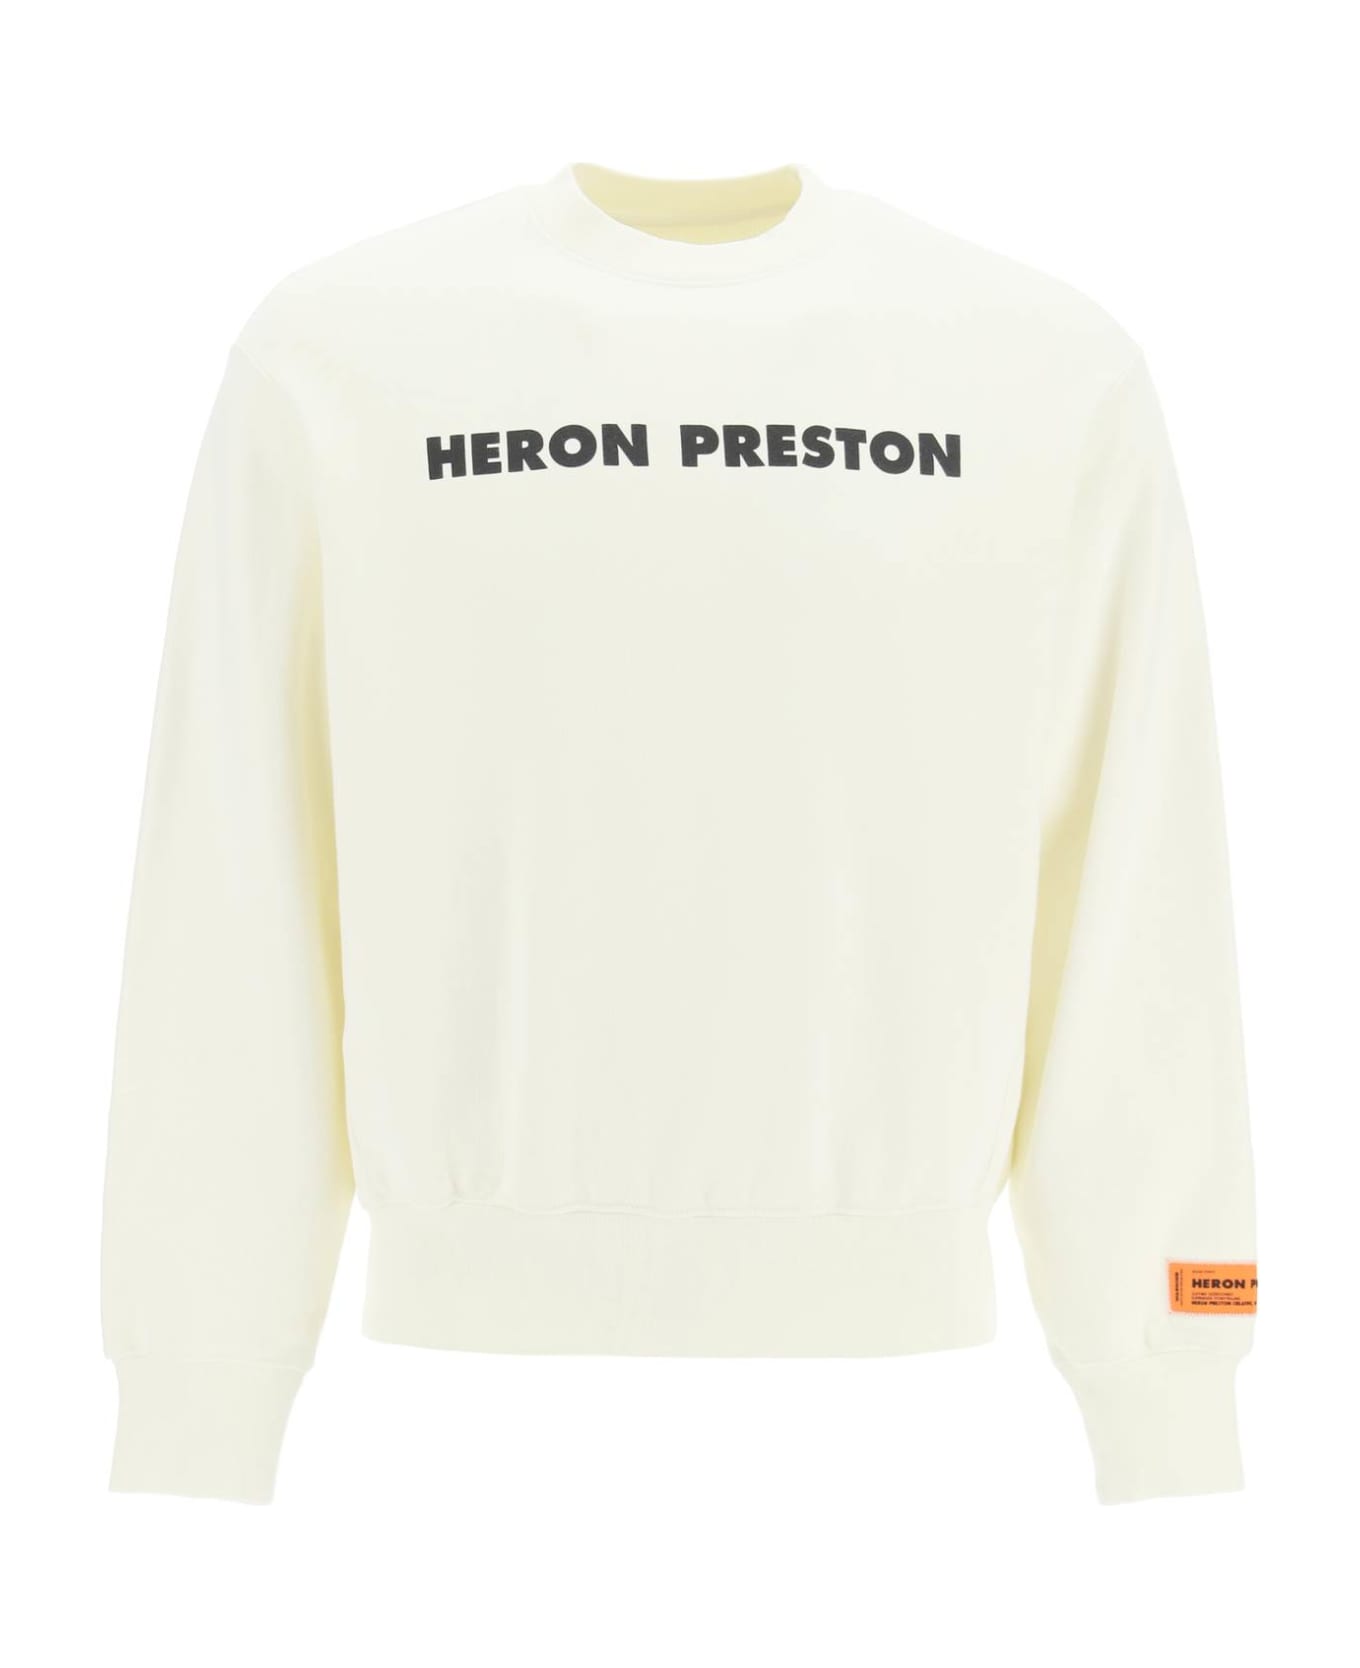 HERON PRESTON Crewneck Sweatshirt - White/black